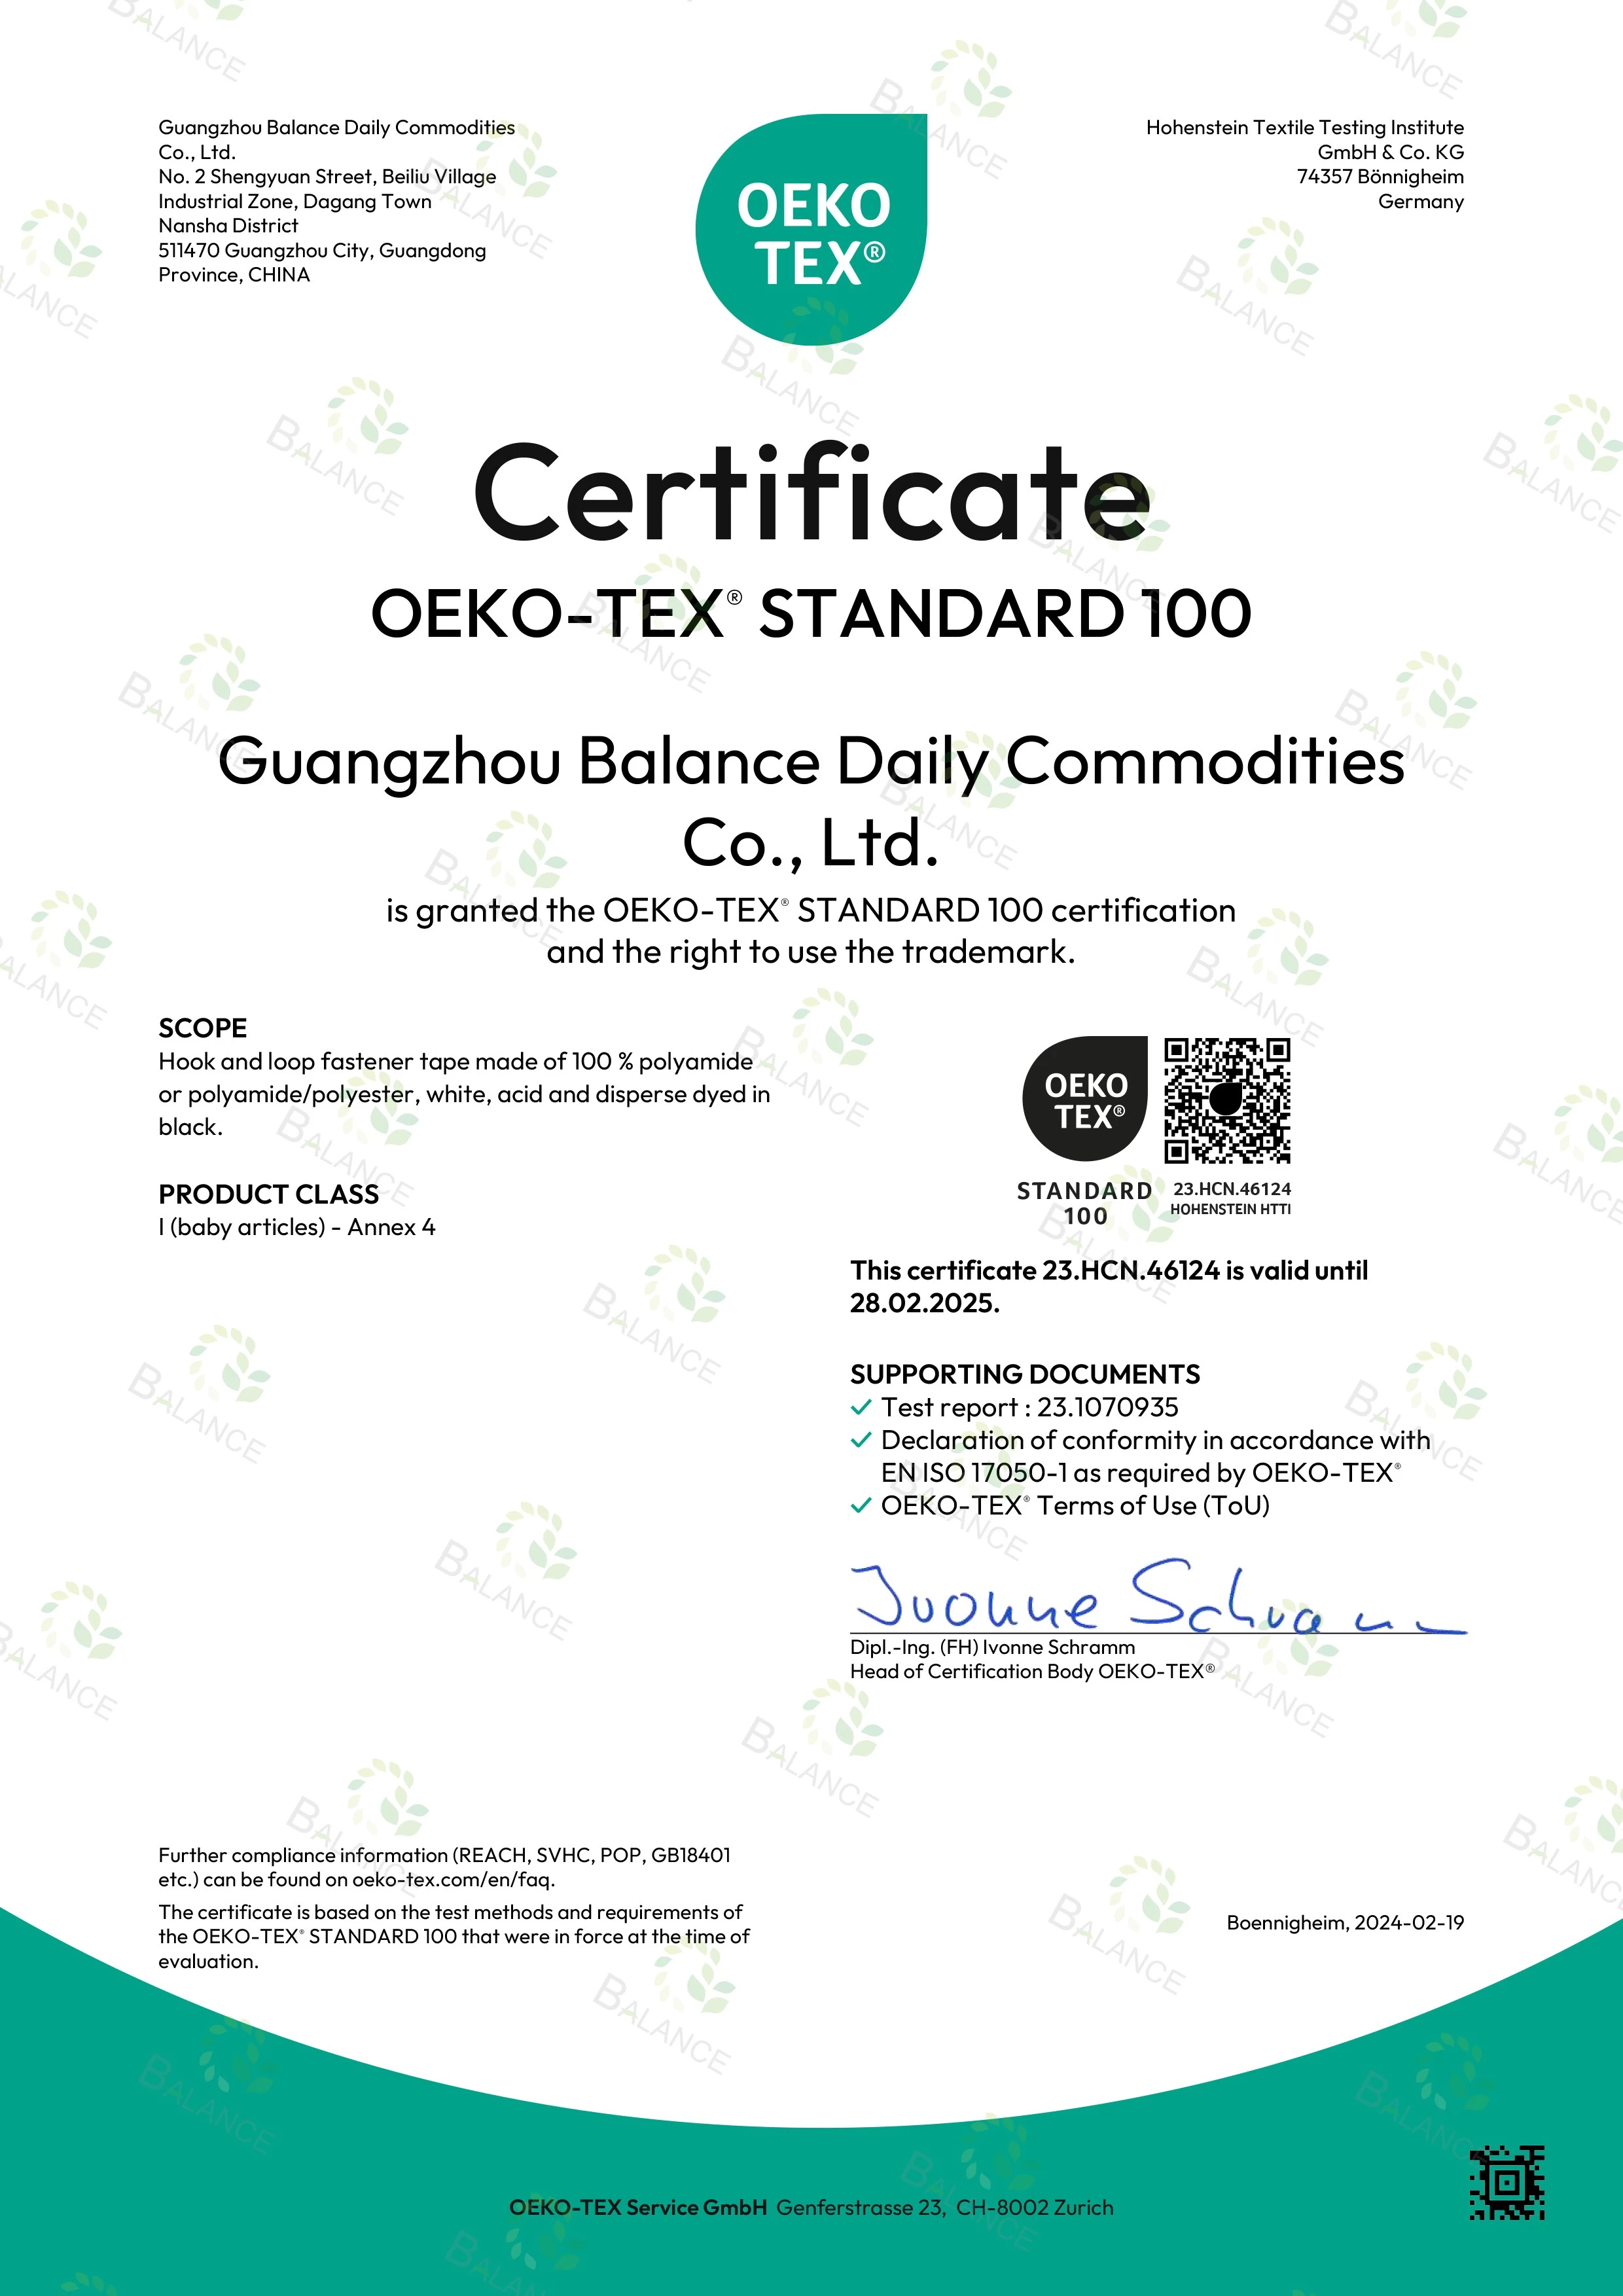 اخبار حماسية! حصلت أشرطة الخطاف والحلقة الخاصة بنا على شهادة OEKO-TEX' STANDARD 100